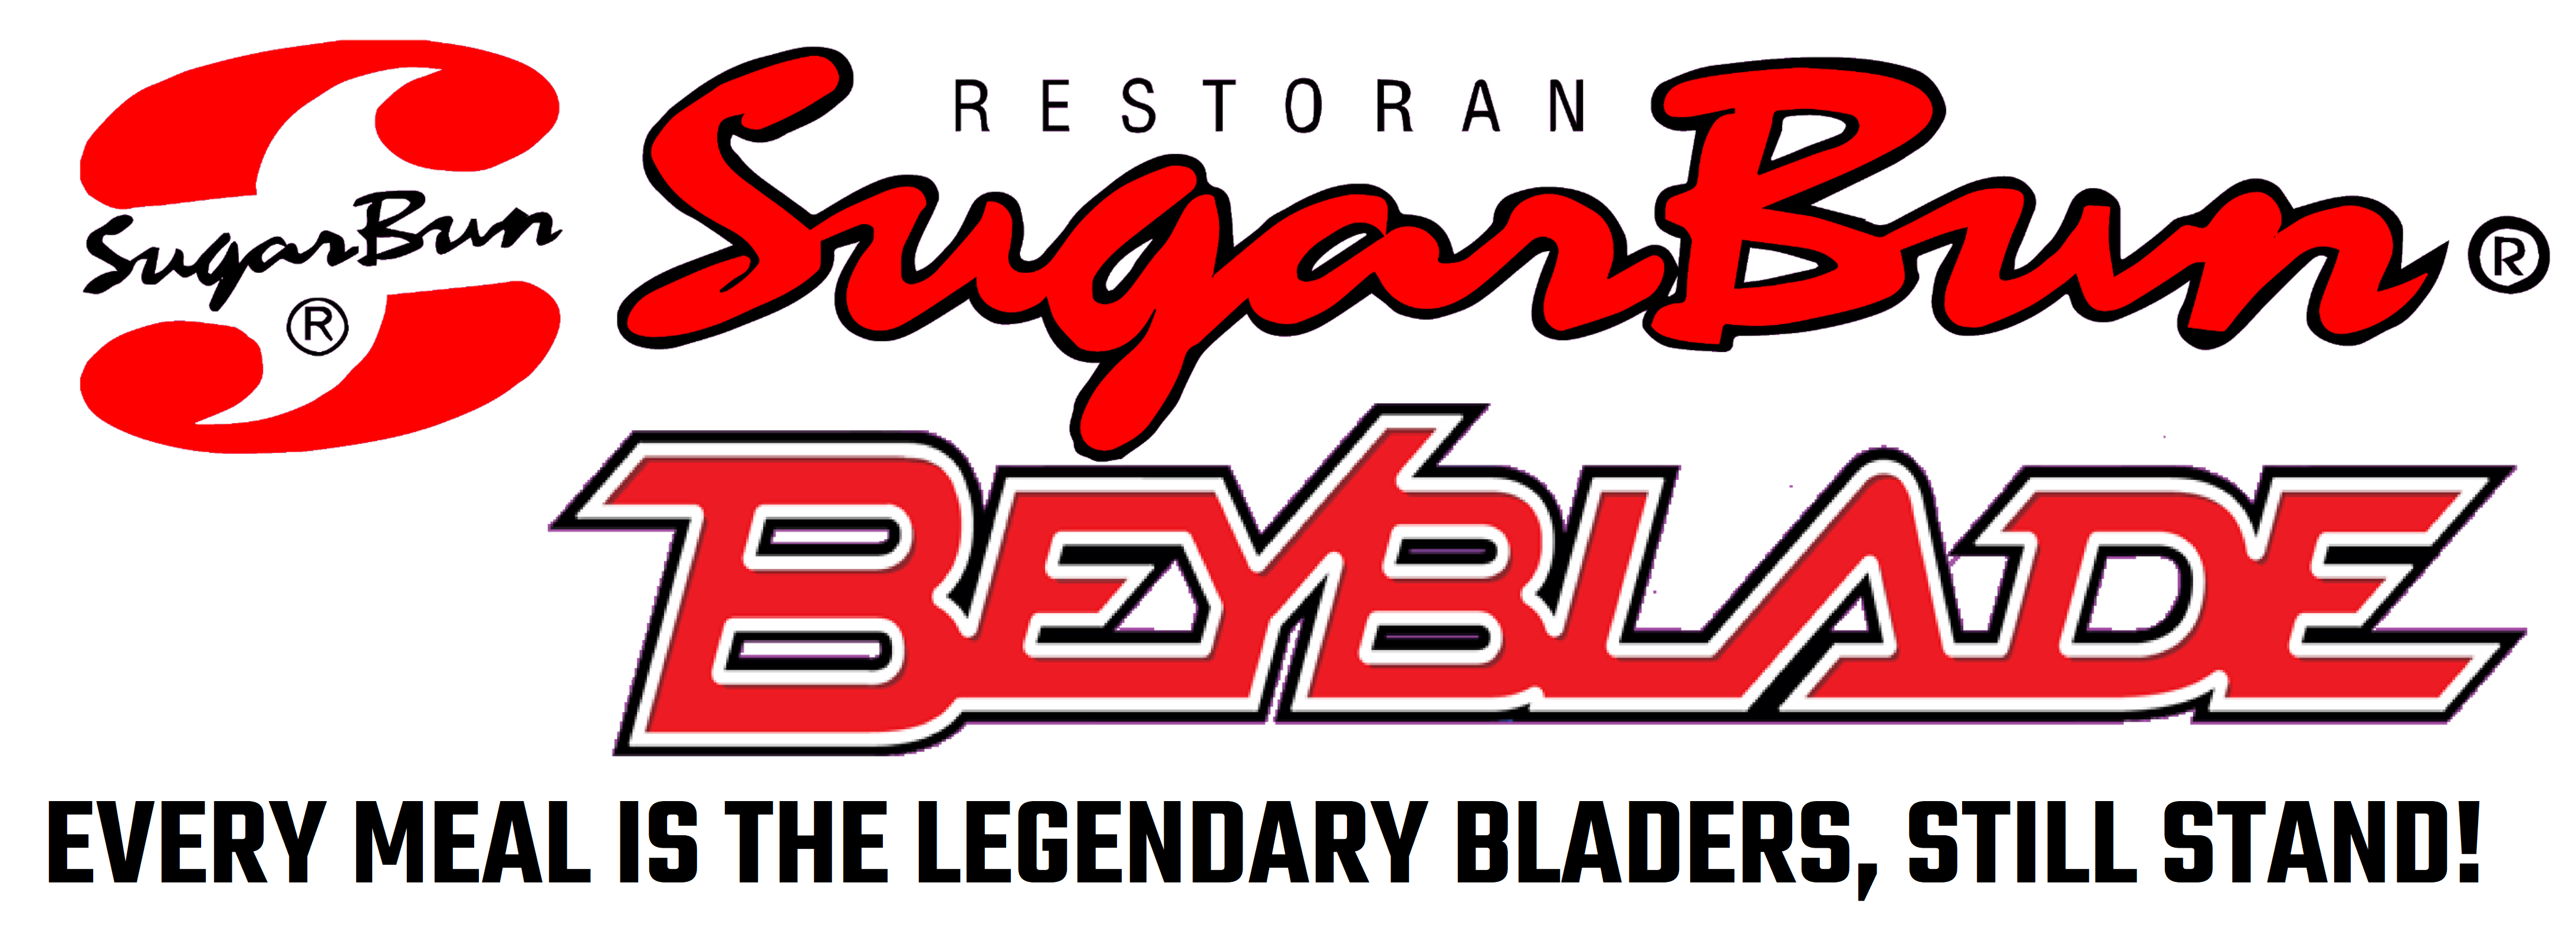 Bladers Legendarios, Beyblade Wiki